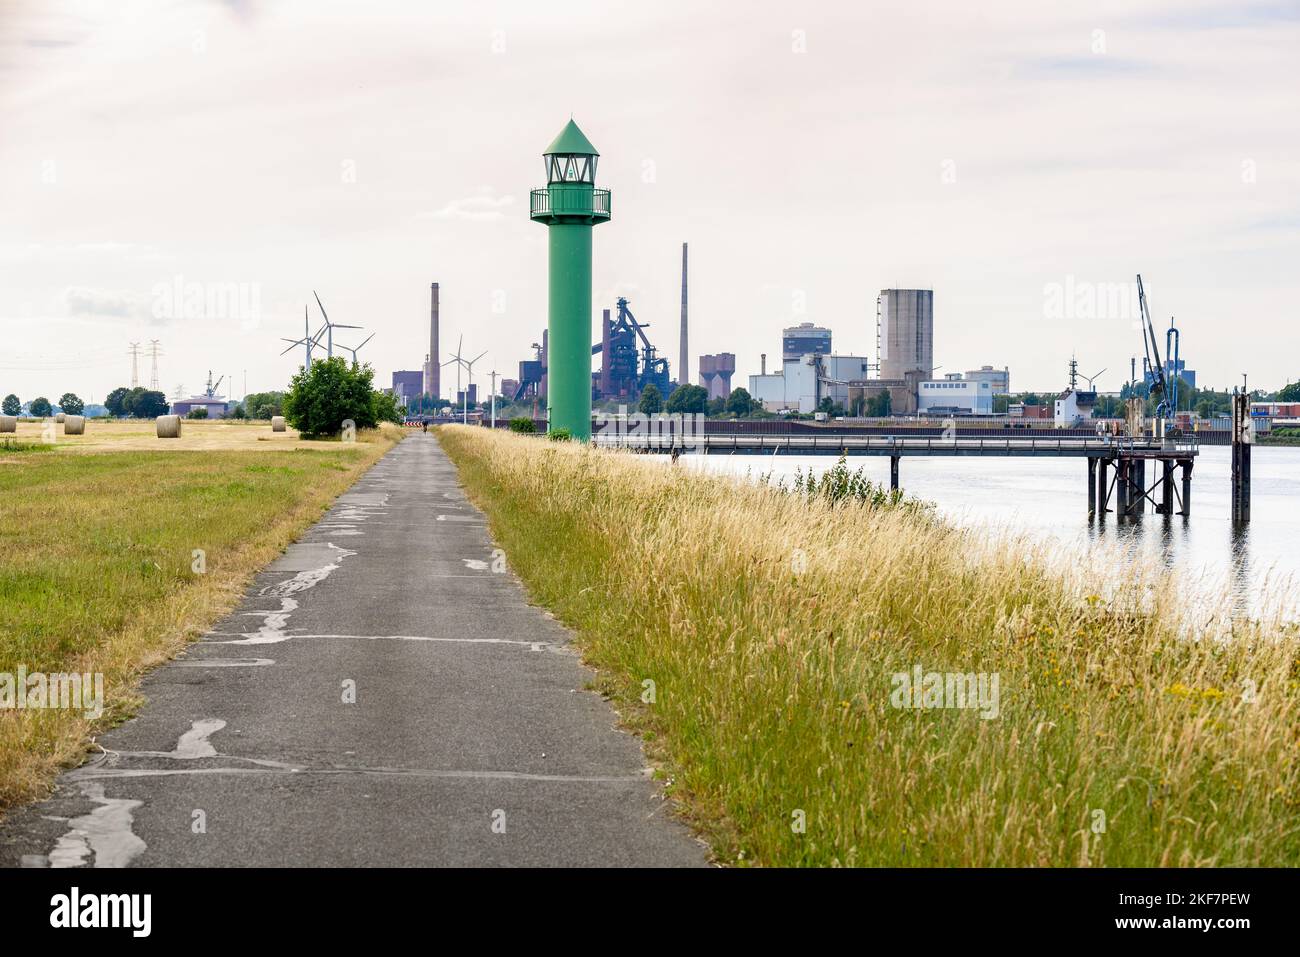 Leuchtturm auf einem asphaltierten Weg am Ufer der Weser in Bremen. Industrieanlagen und Lager sind im Hintergrund sichtbar. Stockfoto